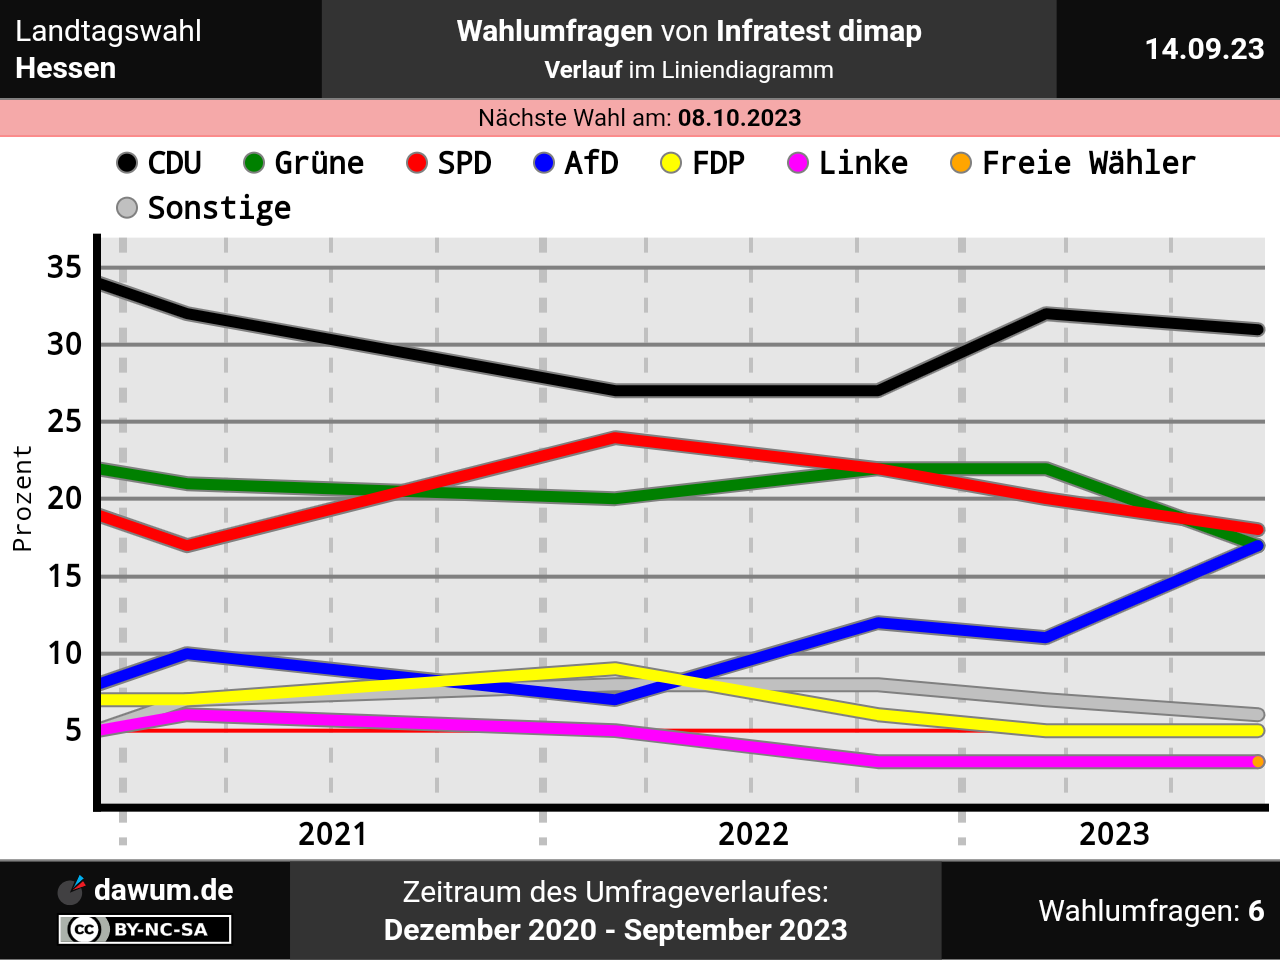 #CDU/CSU greifen die #Grünen an und stärken damit die Rechten. #Umfrage #Hessen-Wahl